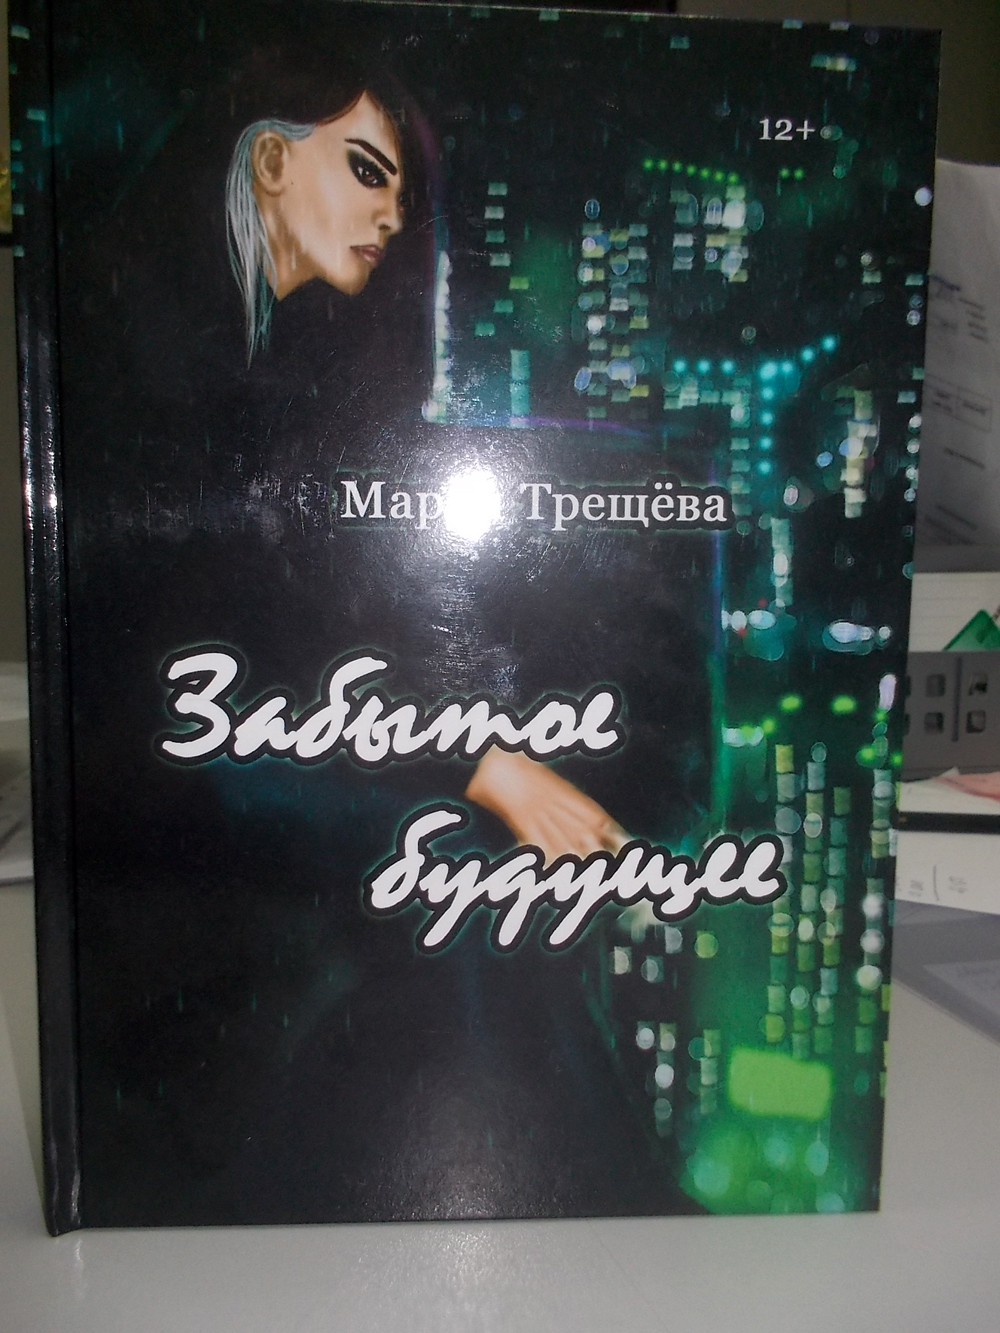 Подарок от издательства для Марии Трещёвой